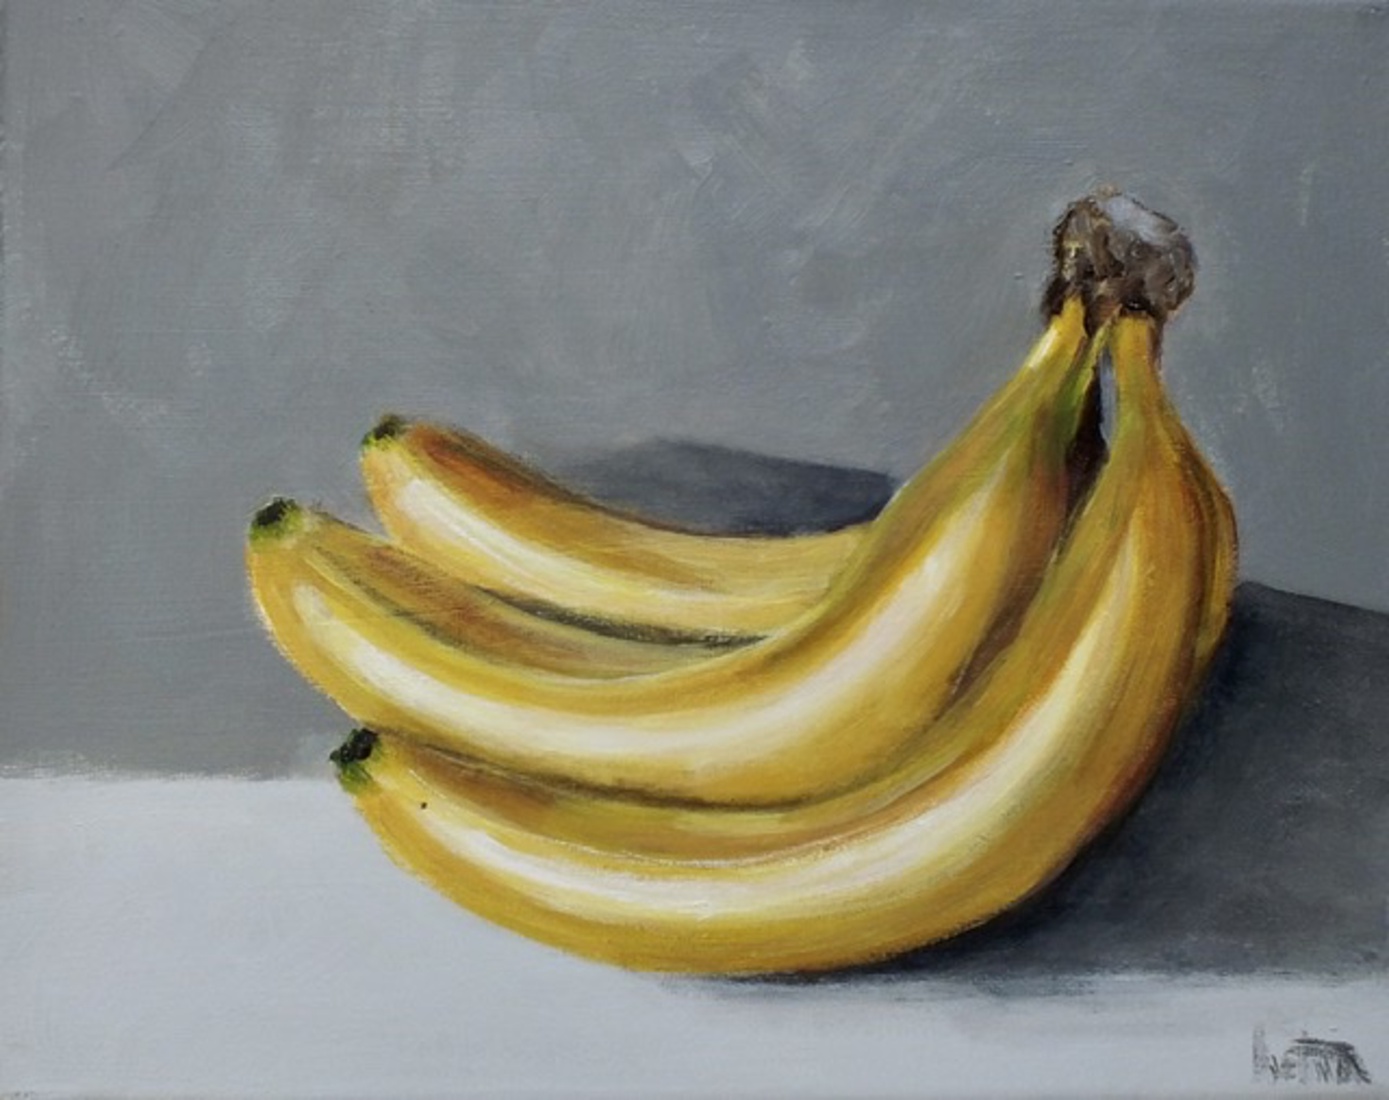  Bananen